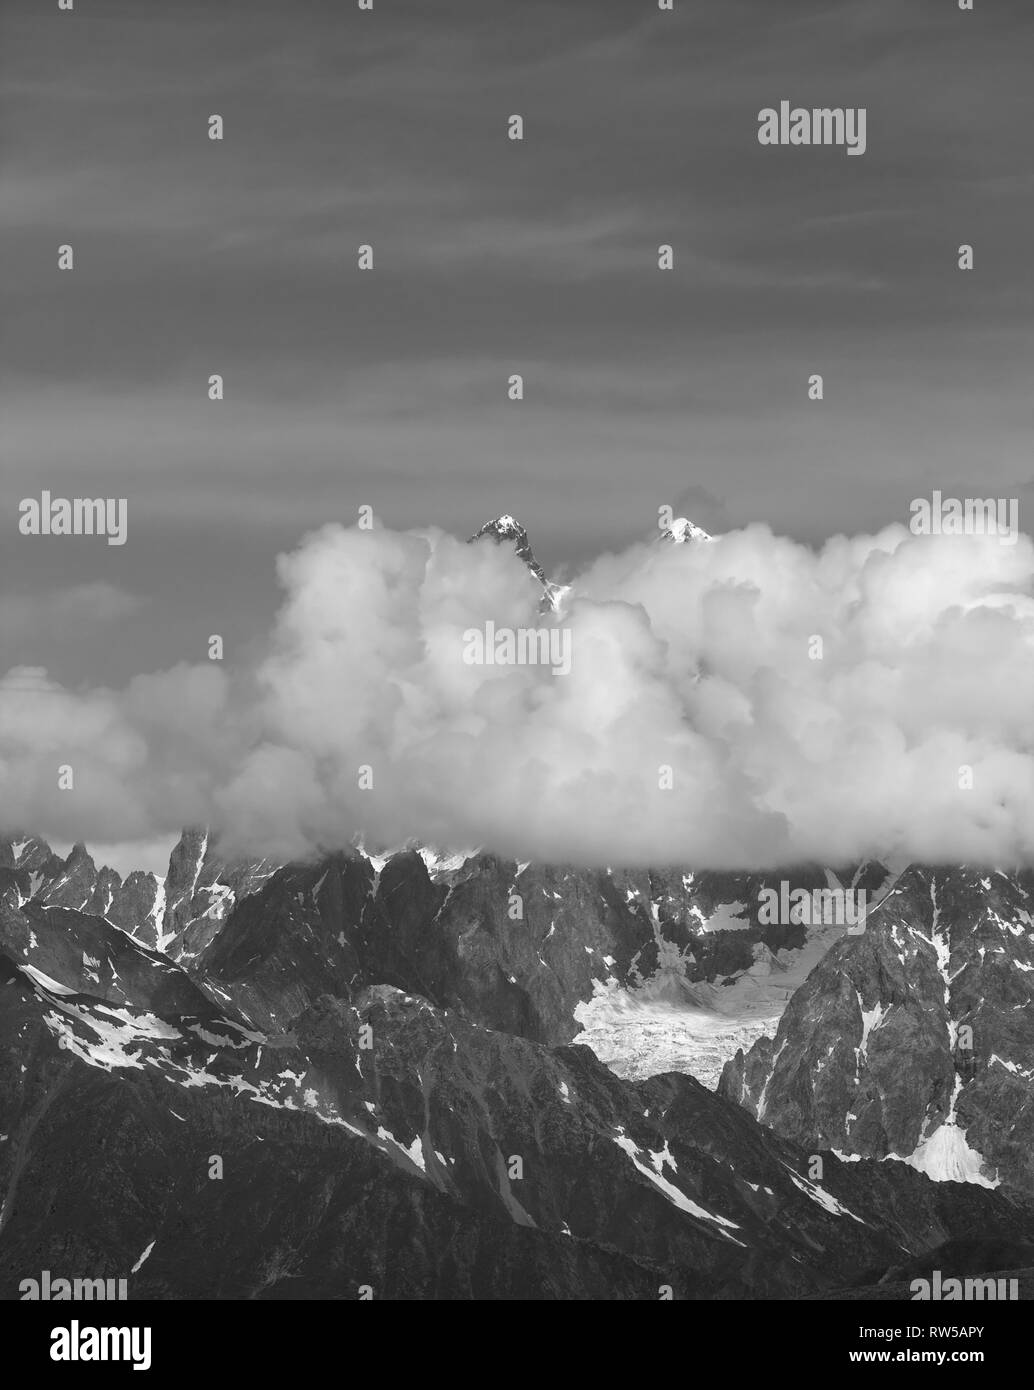 De hautes montagnes avec de la neige dans les nuages à jour d'été. Montagnes du Caucase, la Géorgie, la région, le Mont Ushba Svaneti. Paysage aux tons noir et blanc. Banque D'Images